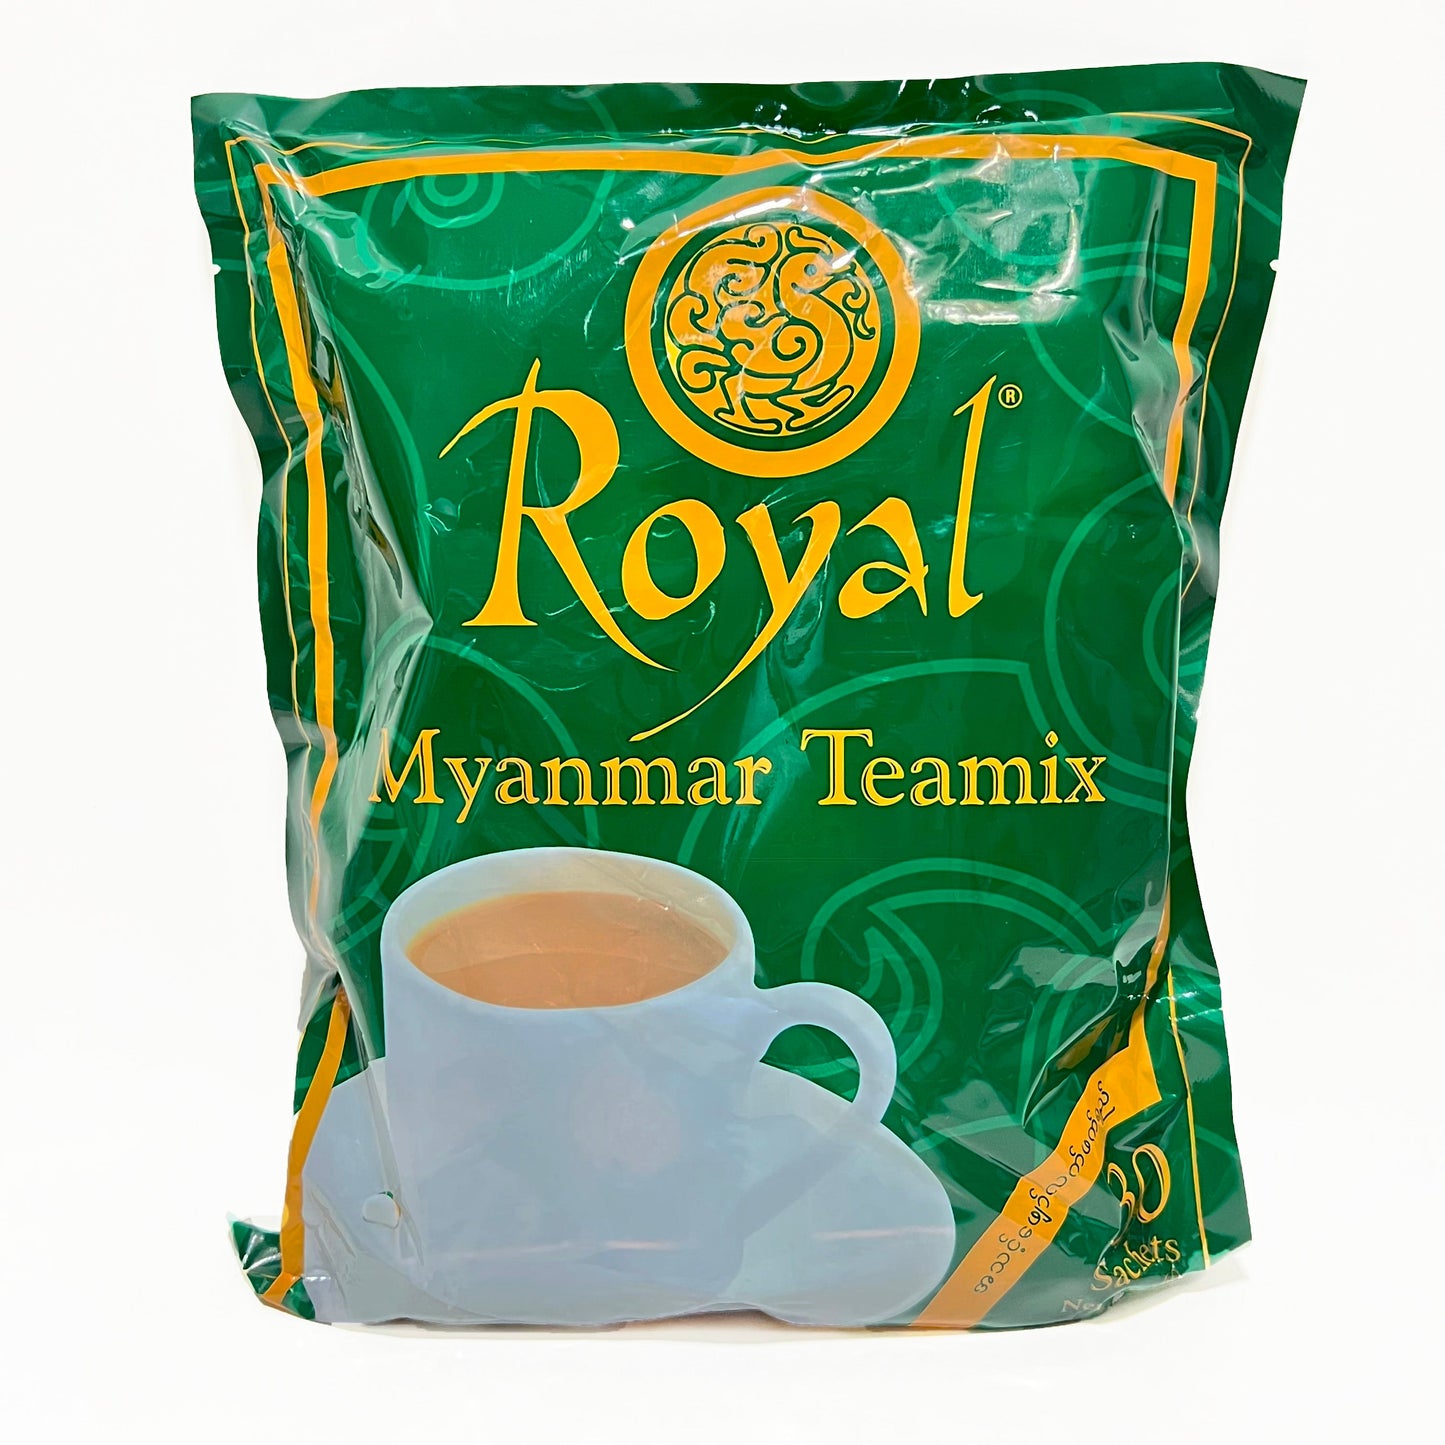 Royal Myanmar Teamix  30 Sachets 600g x 12 bags